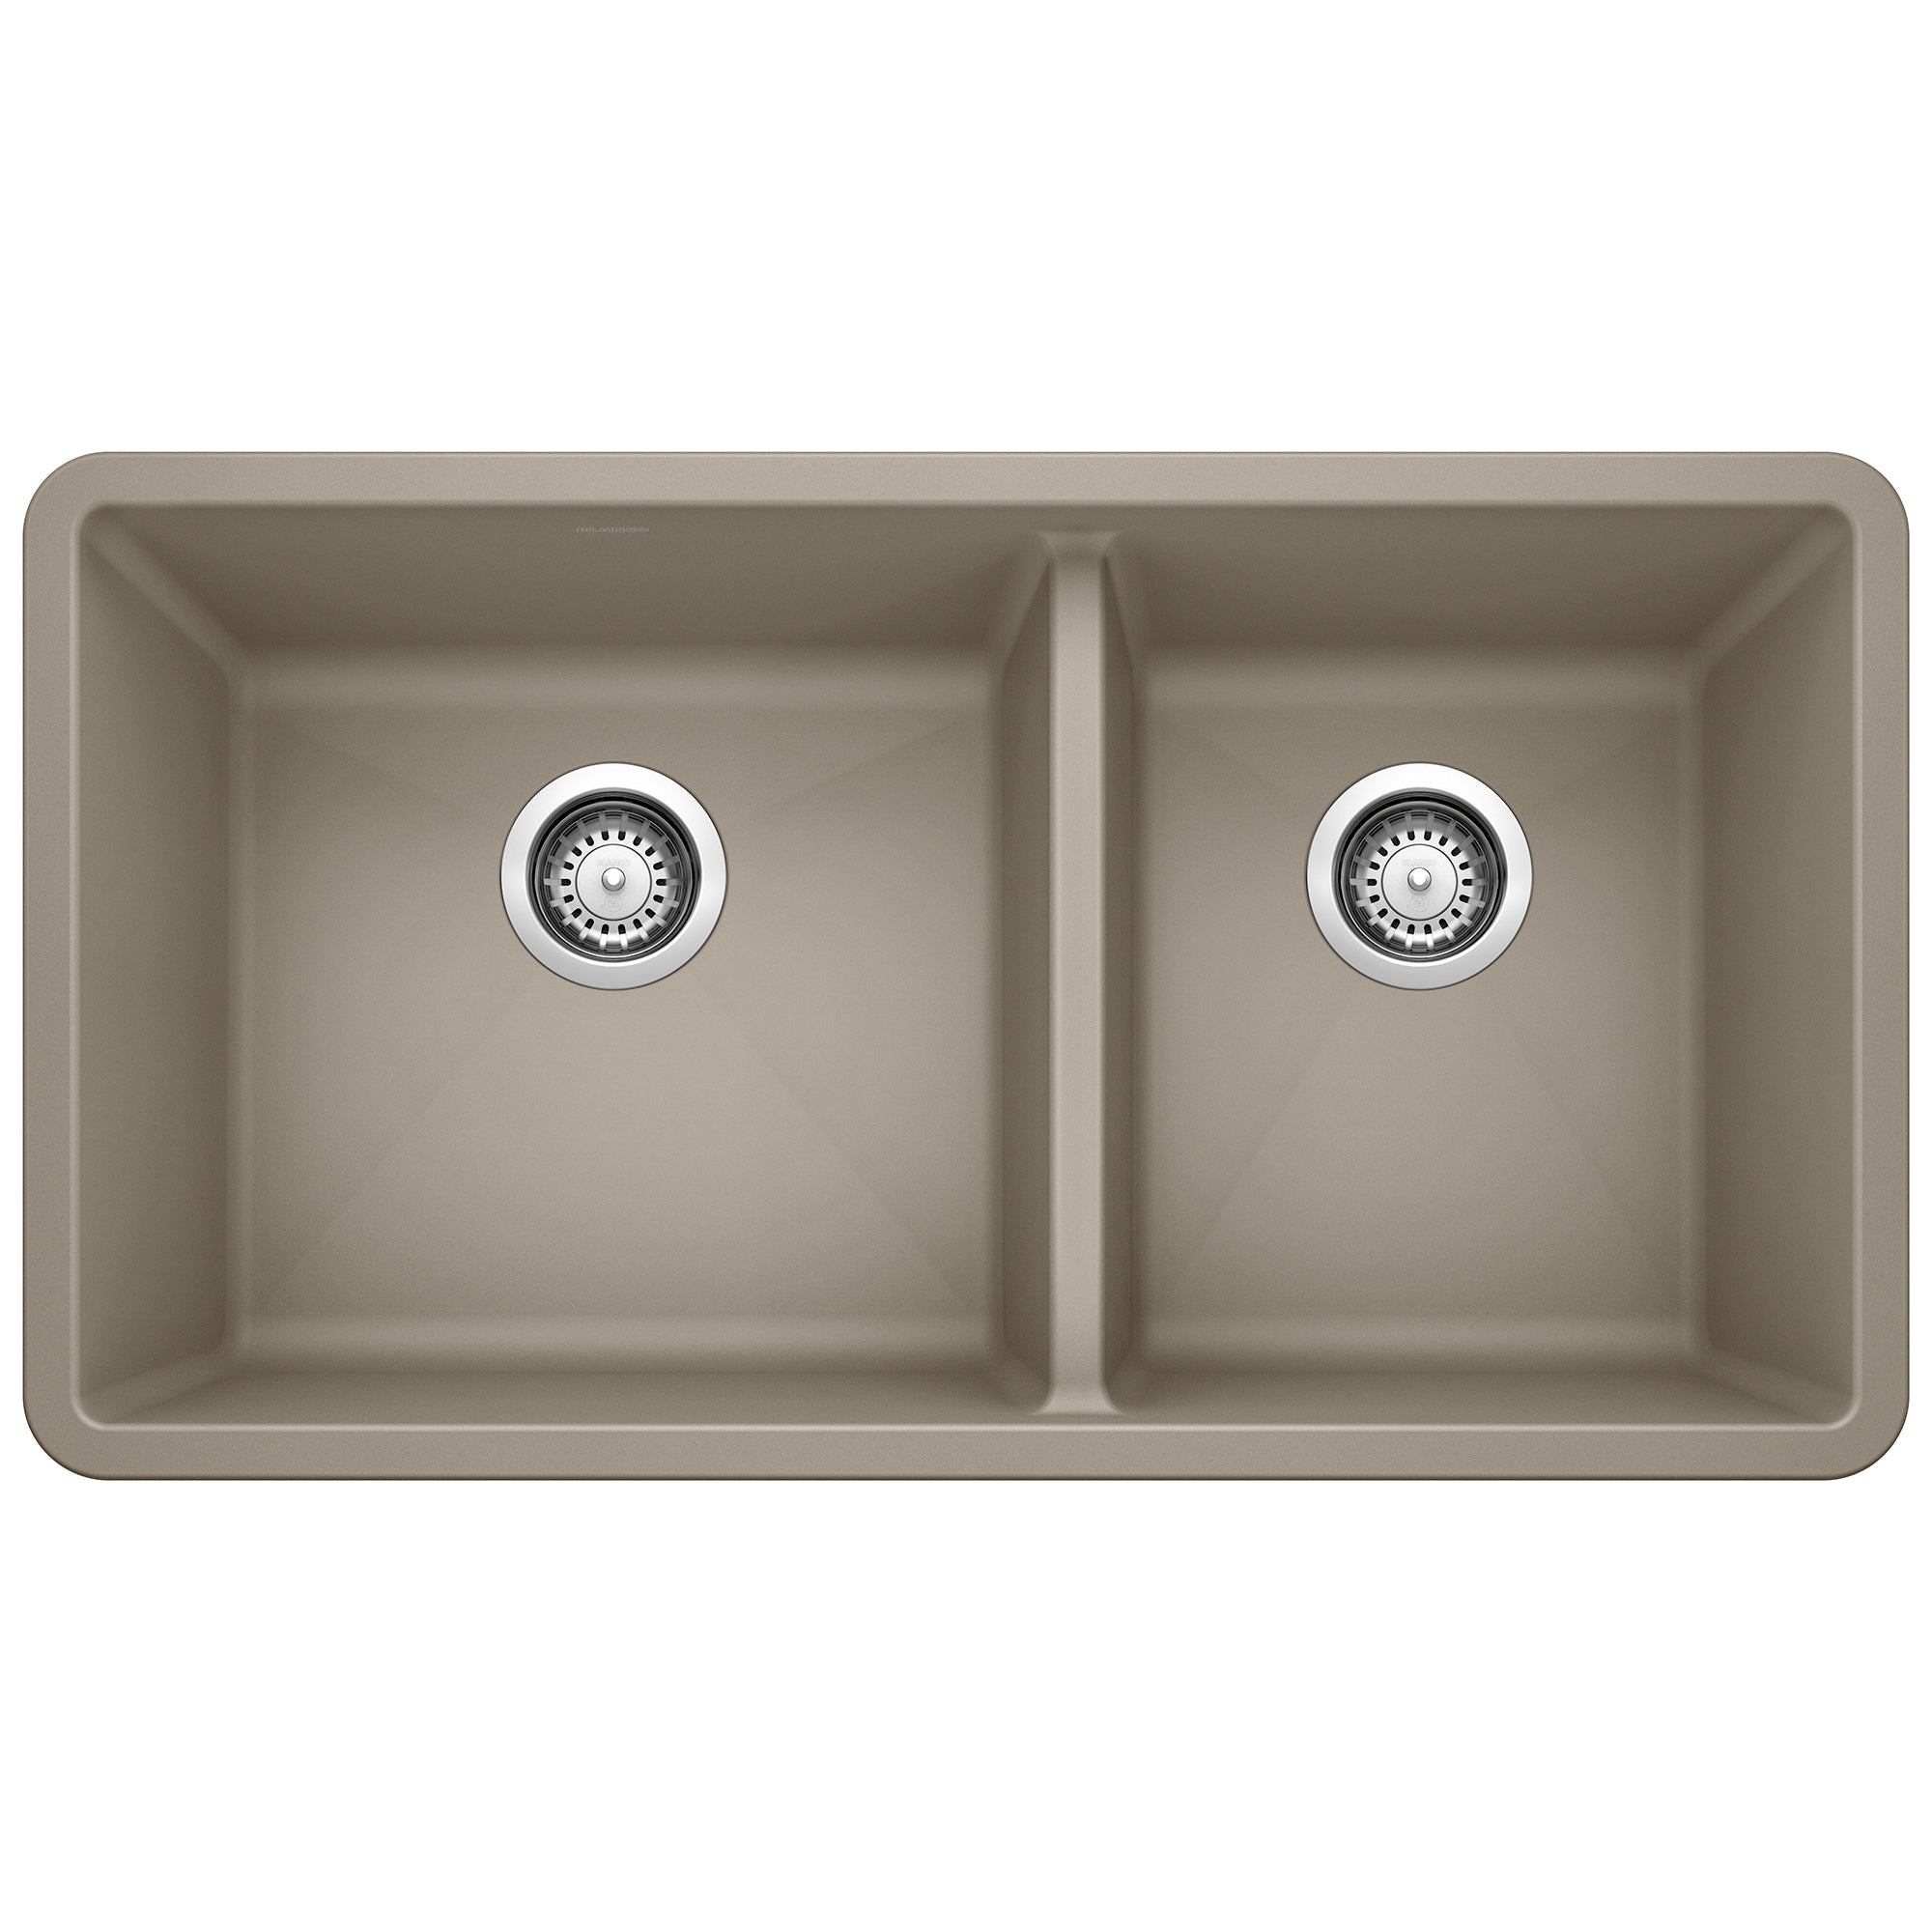 Undermount Kitchen Sinks by BLANCO